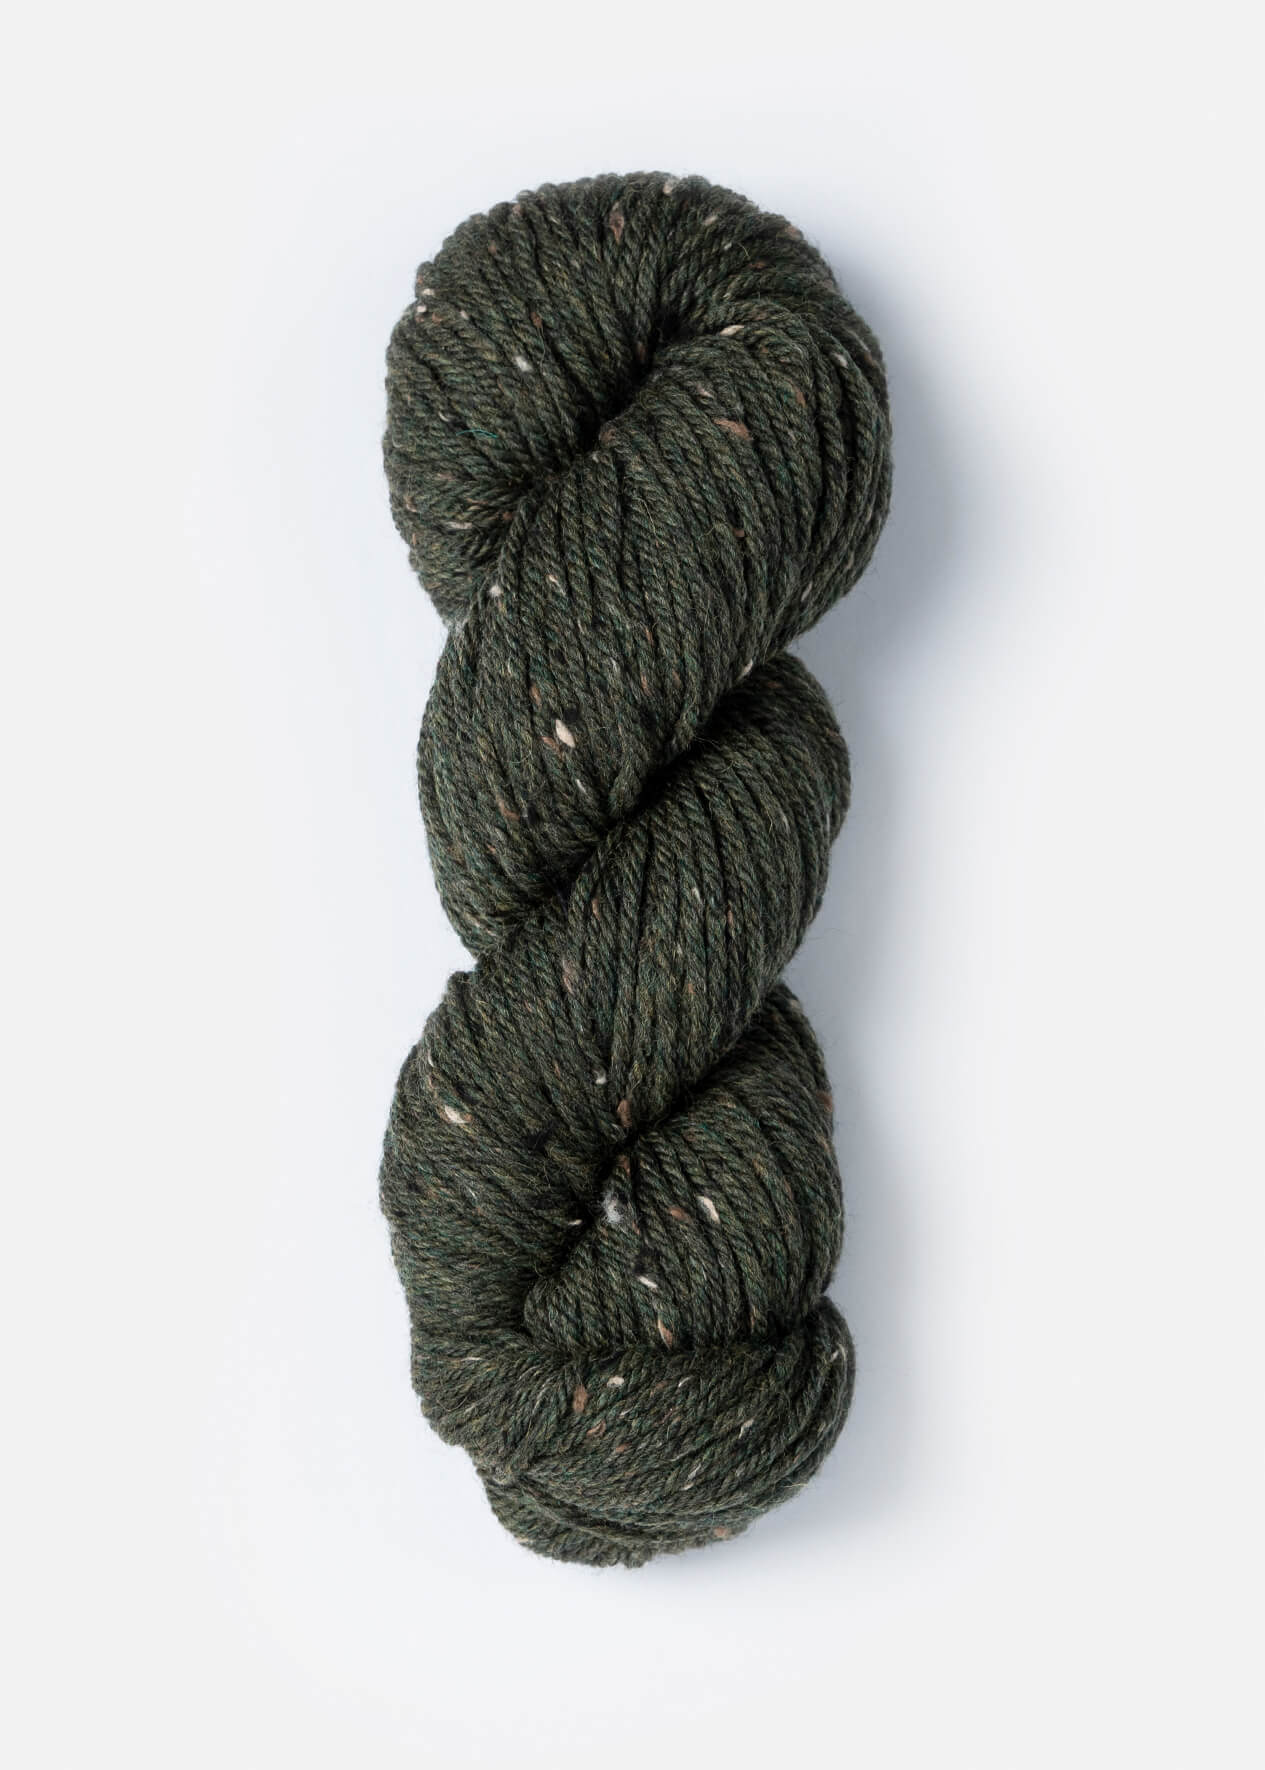 Blue Sky Fibers - Woolstok Tweed - Olive Branch